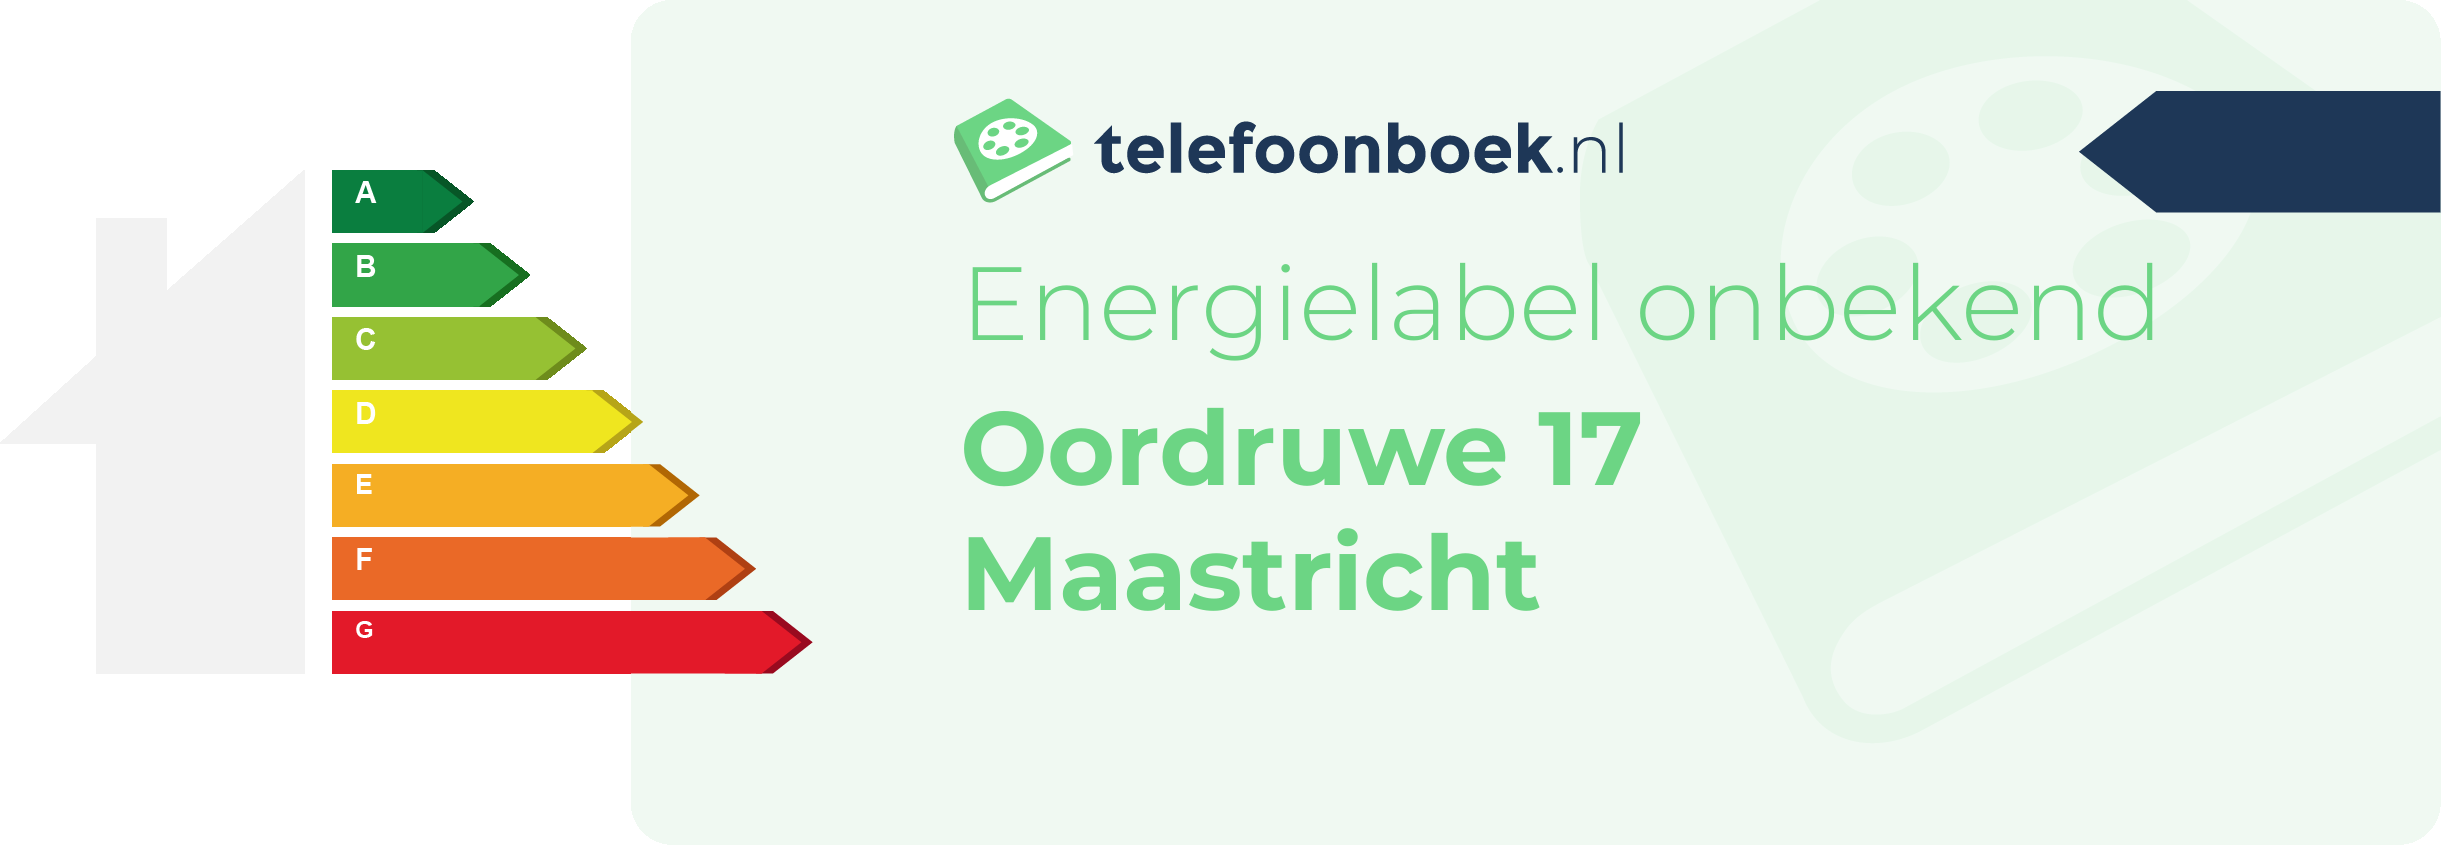 Energielabel Oordruwe 17 Maastricht